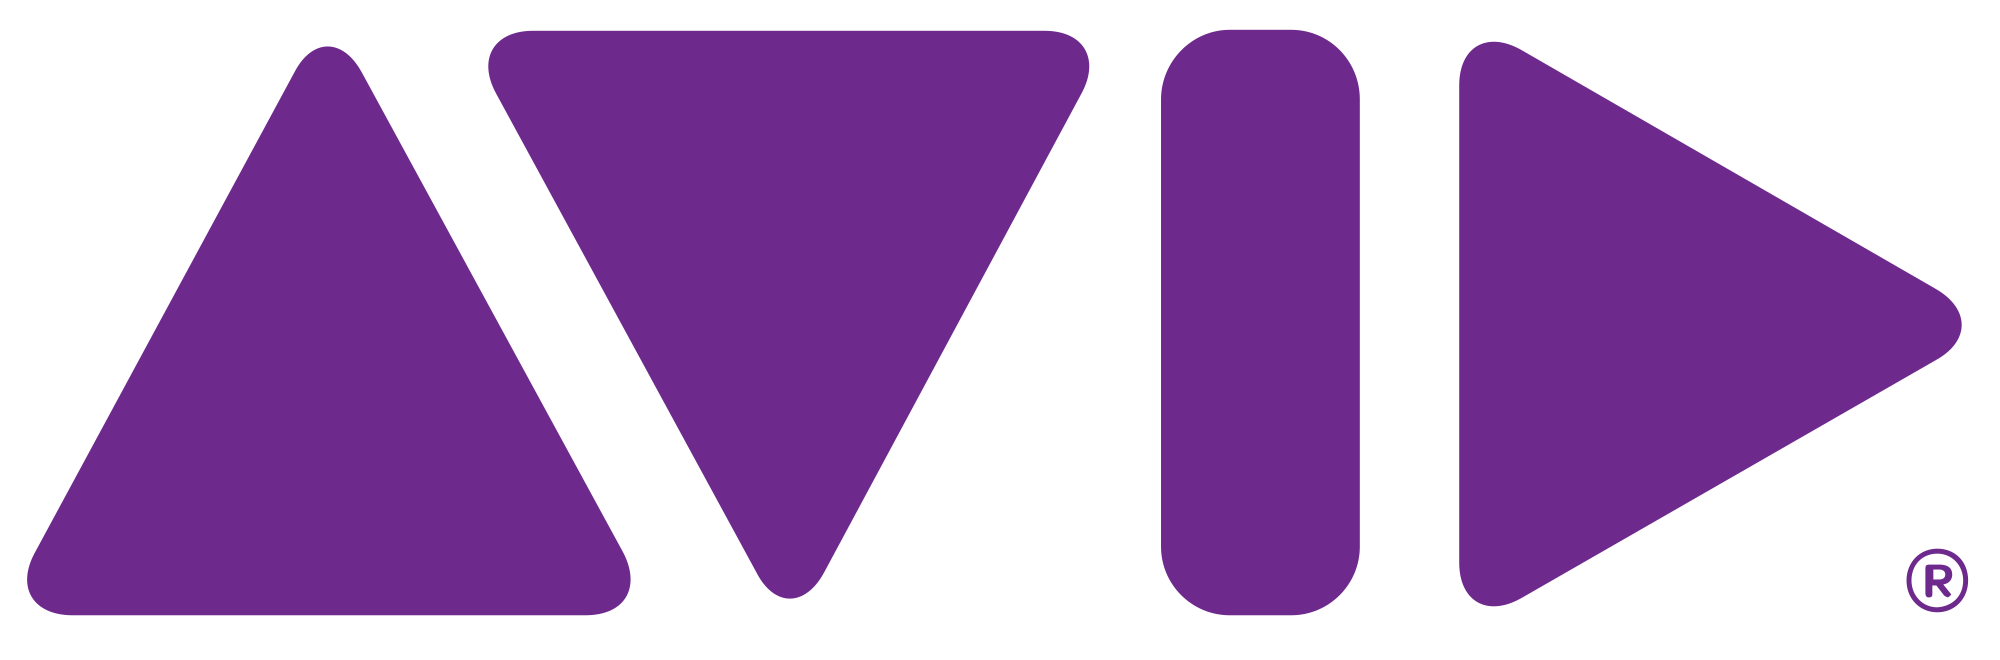 Avid Logo - Avid logo purple 2017.svg